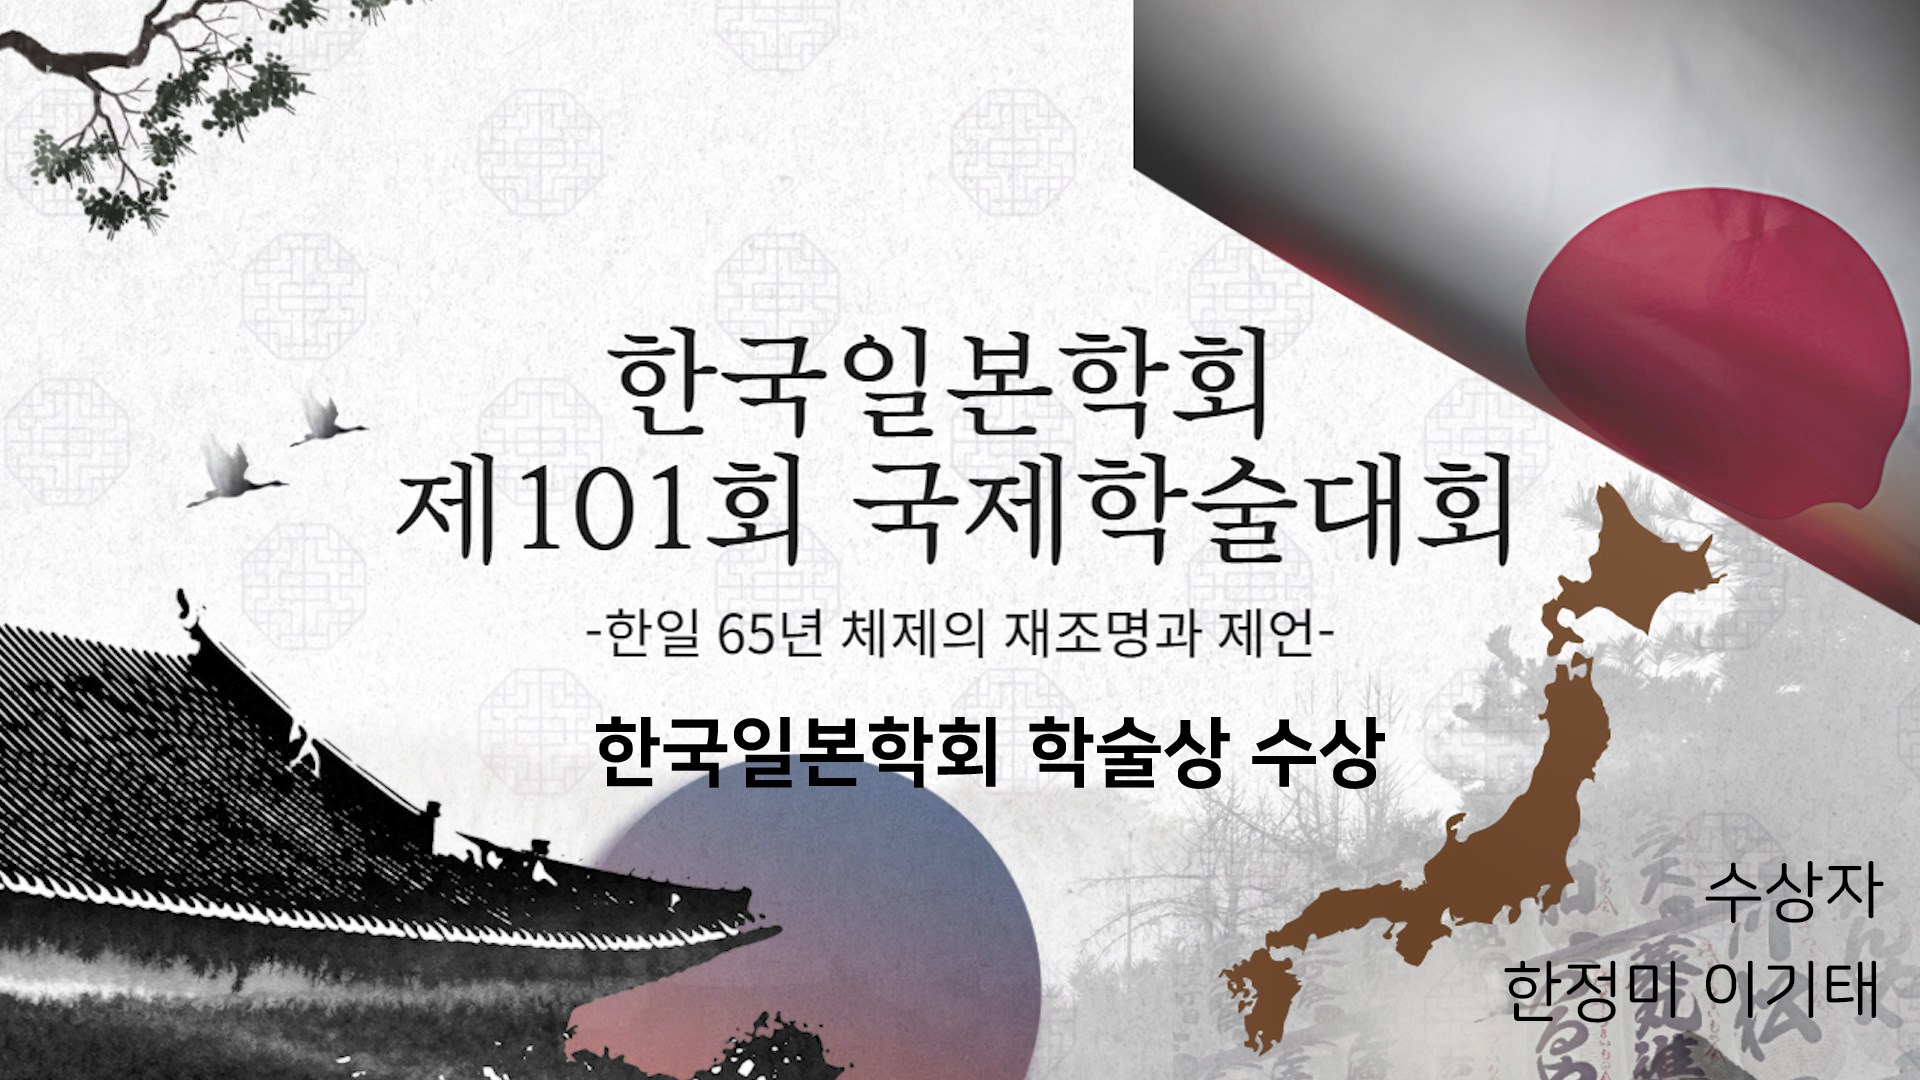 한국일본학회 제101회 국제학술대회 학술상 수상 영상